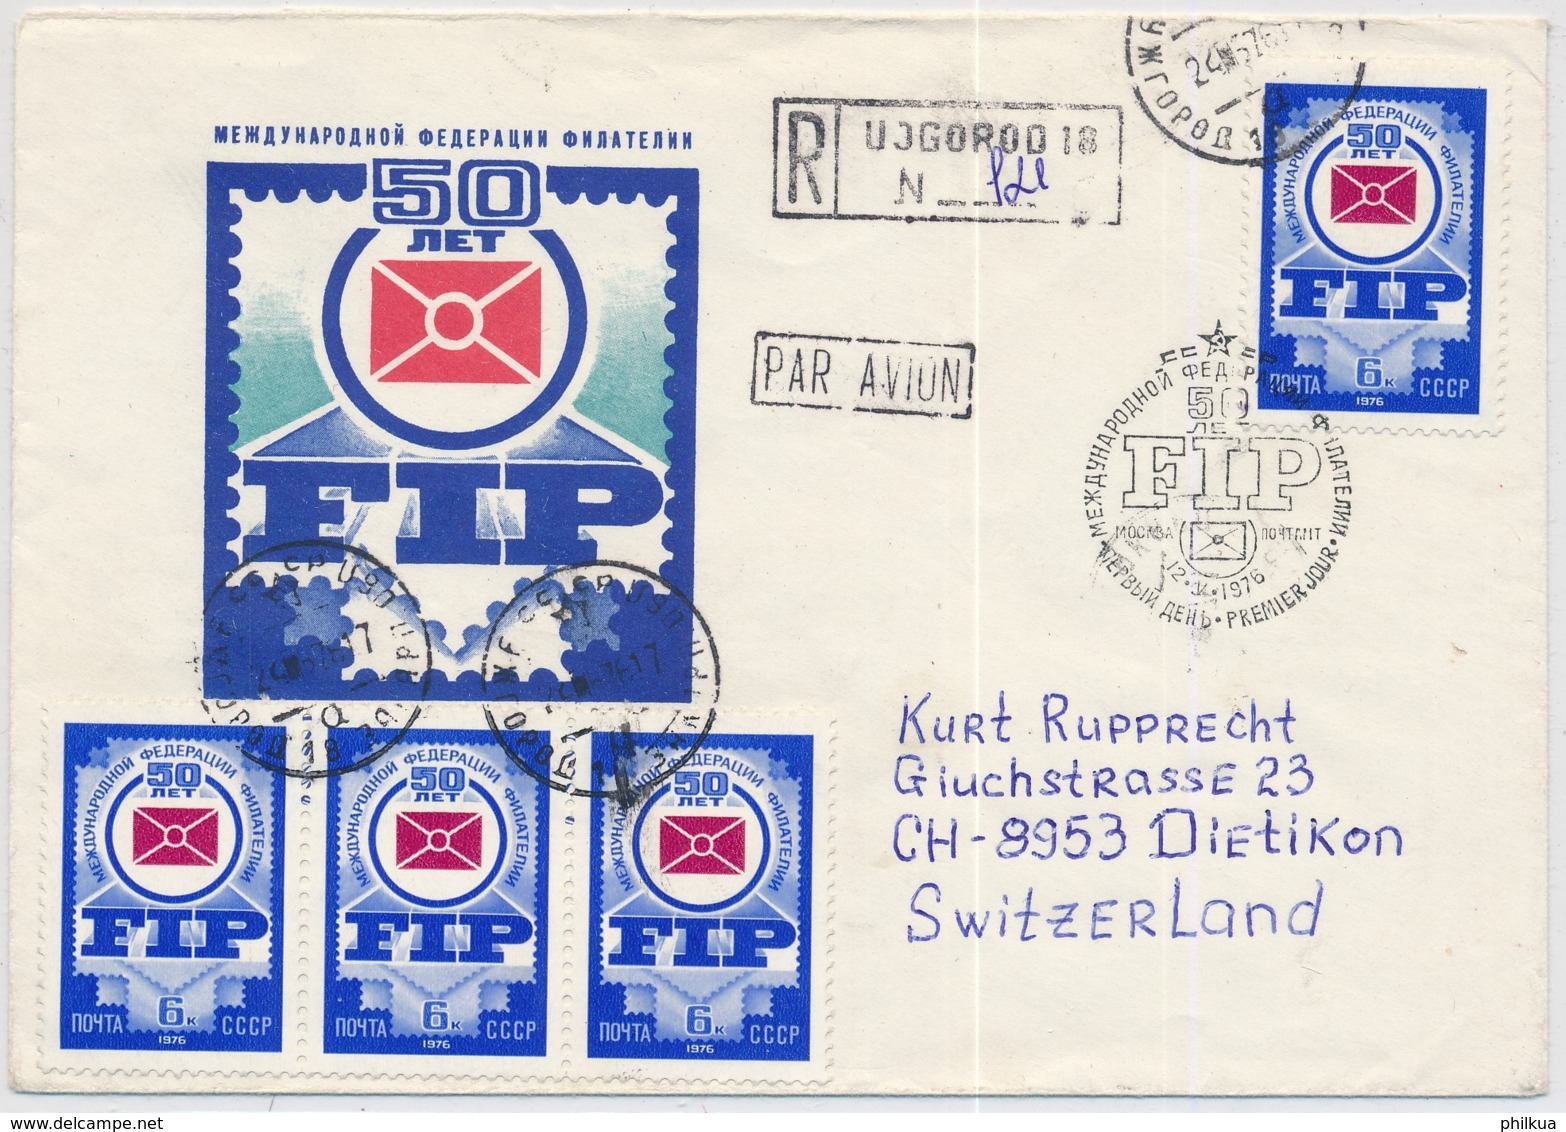 Flugpostbrief Aus Russland / USSR / CCCP Gelaufen Nach Dietikon In Die Schweiz - Covers & Documents